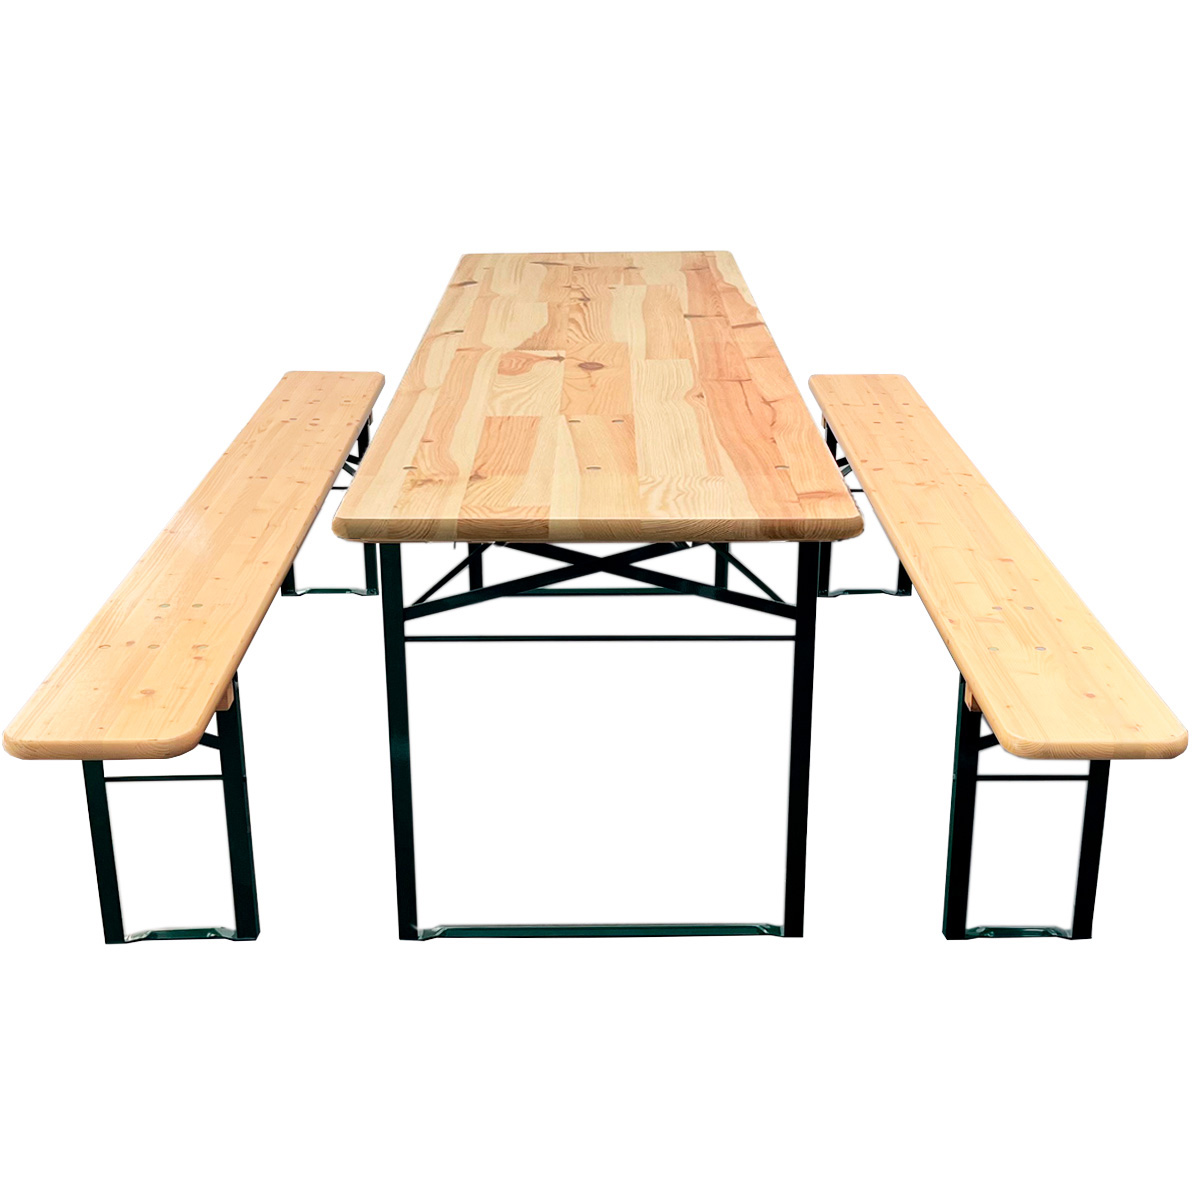 Standard bord-/bænkesæt 220x67 cm